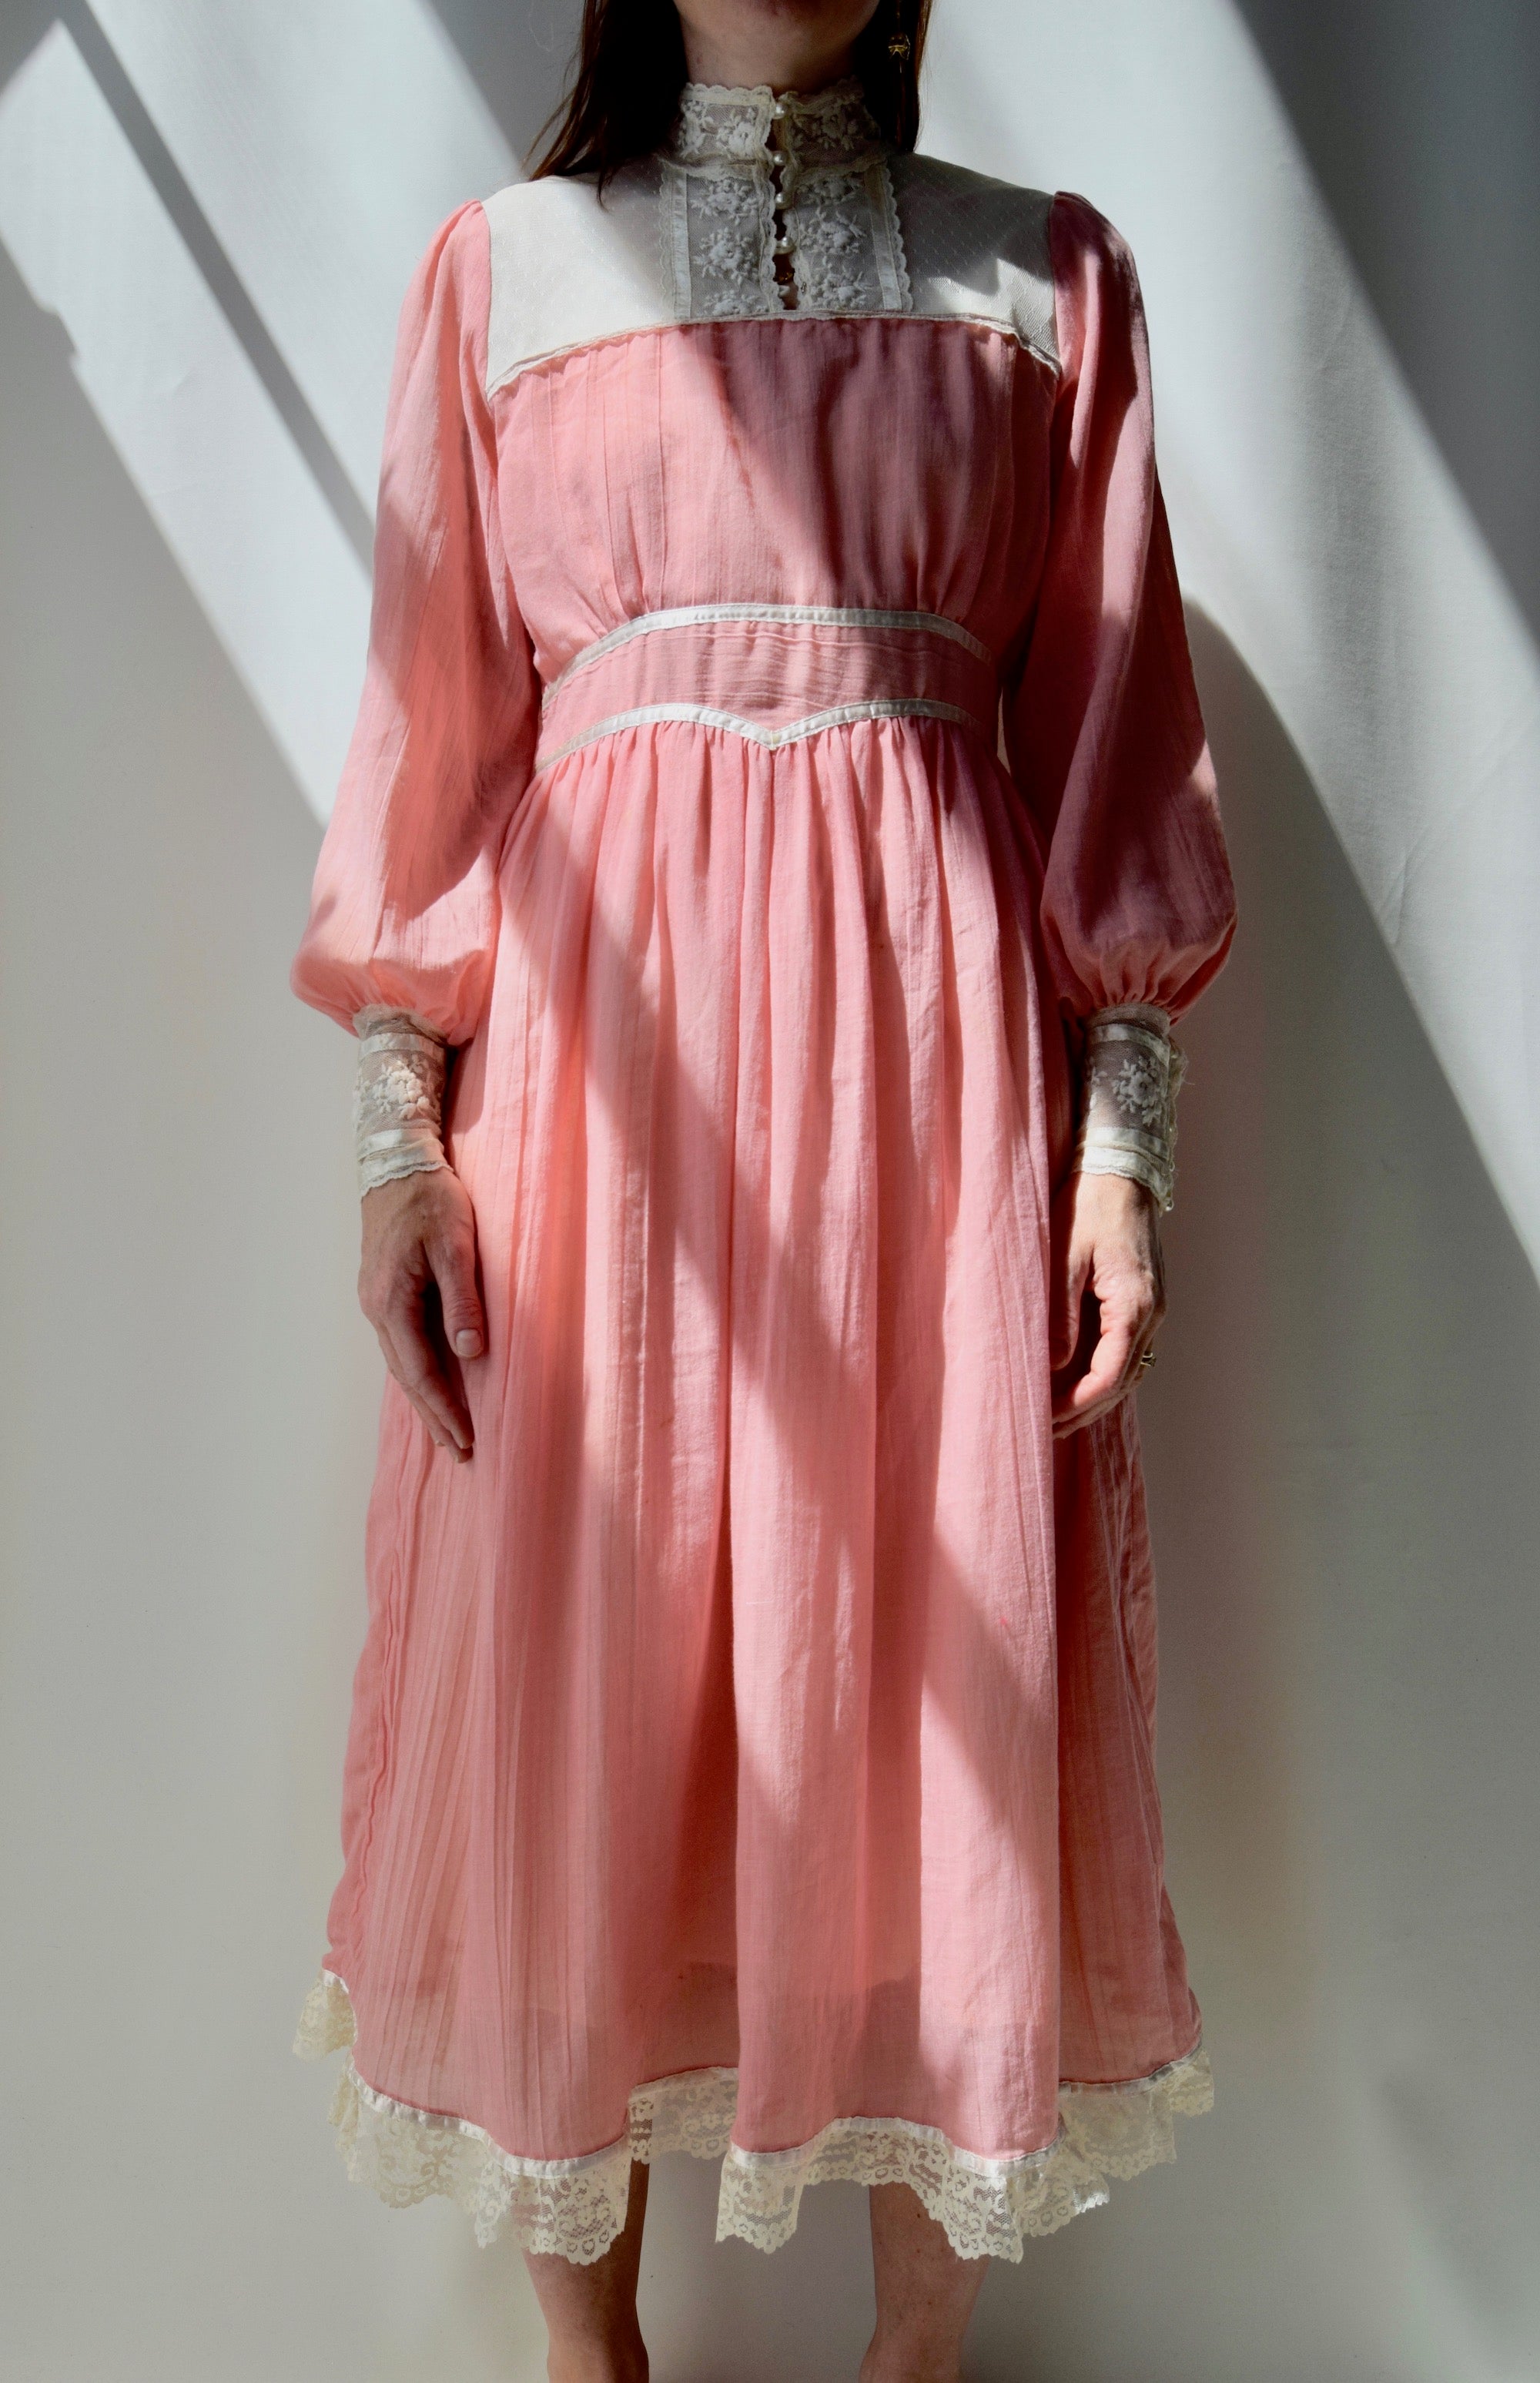 Millenial Pink Gunne Sax Dress